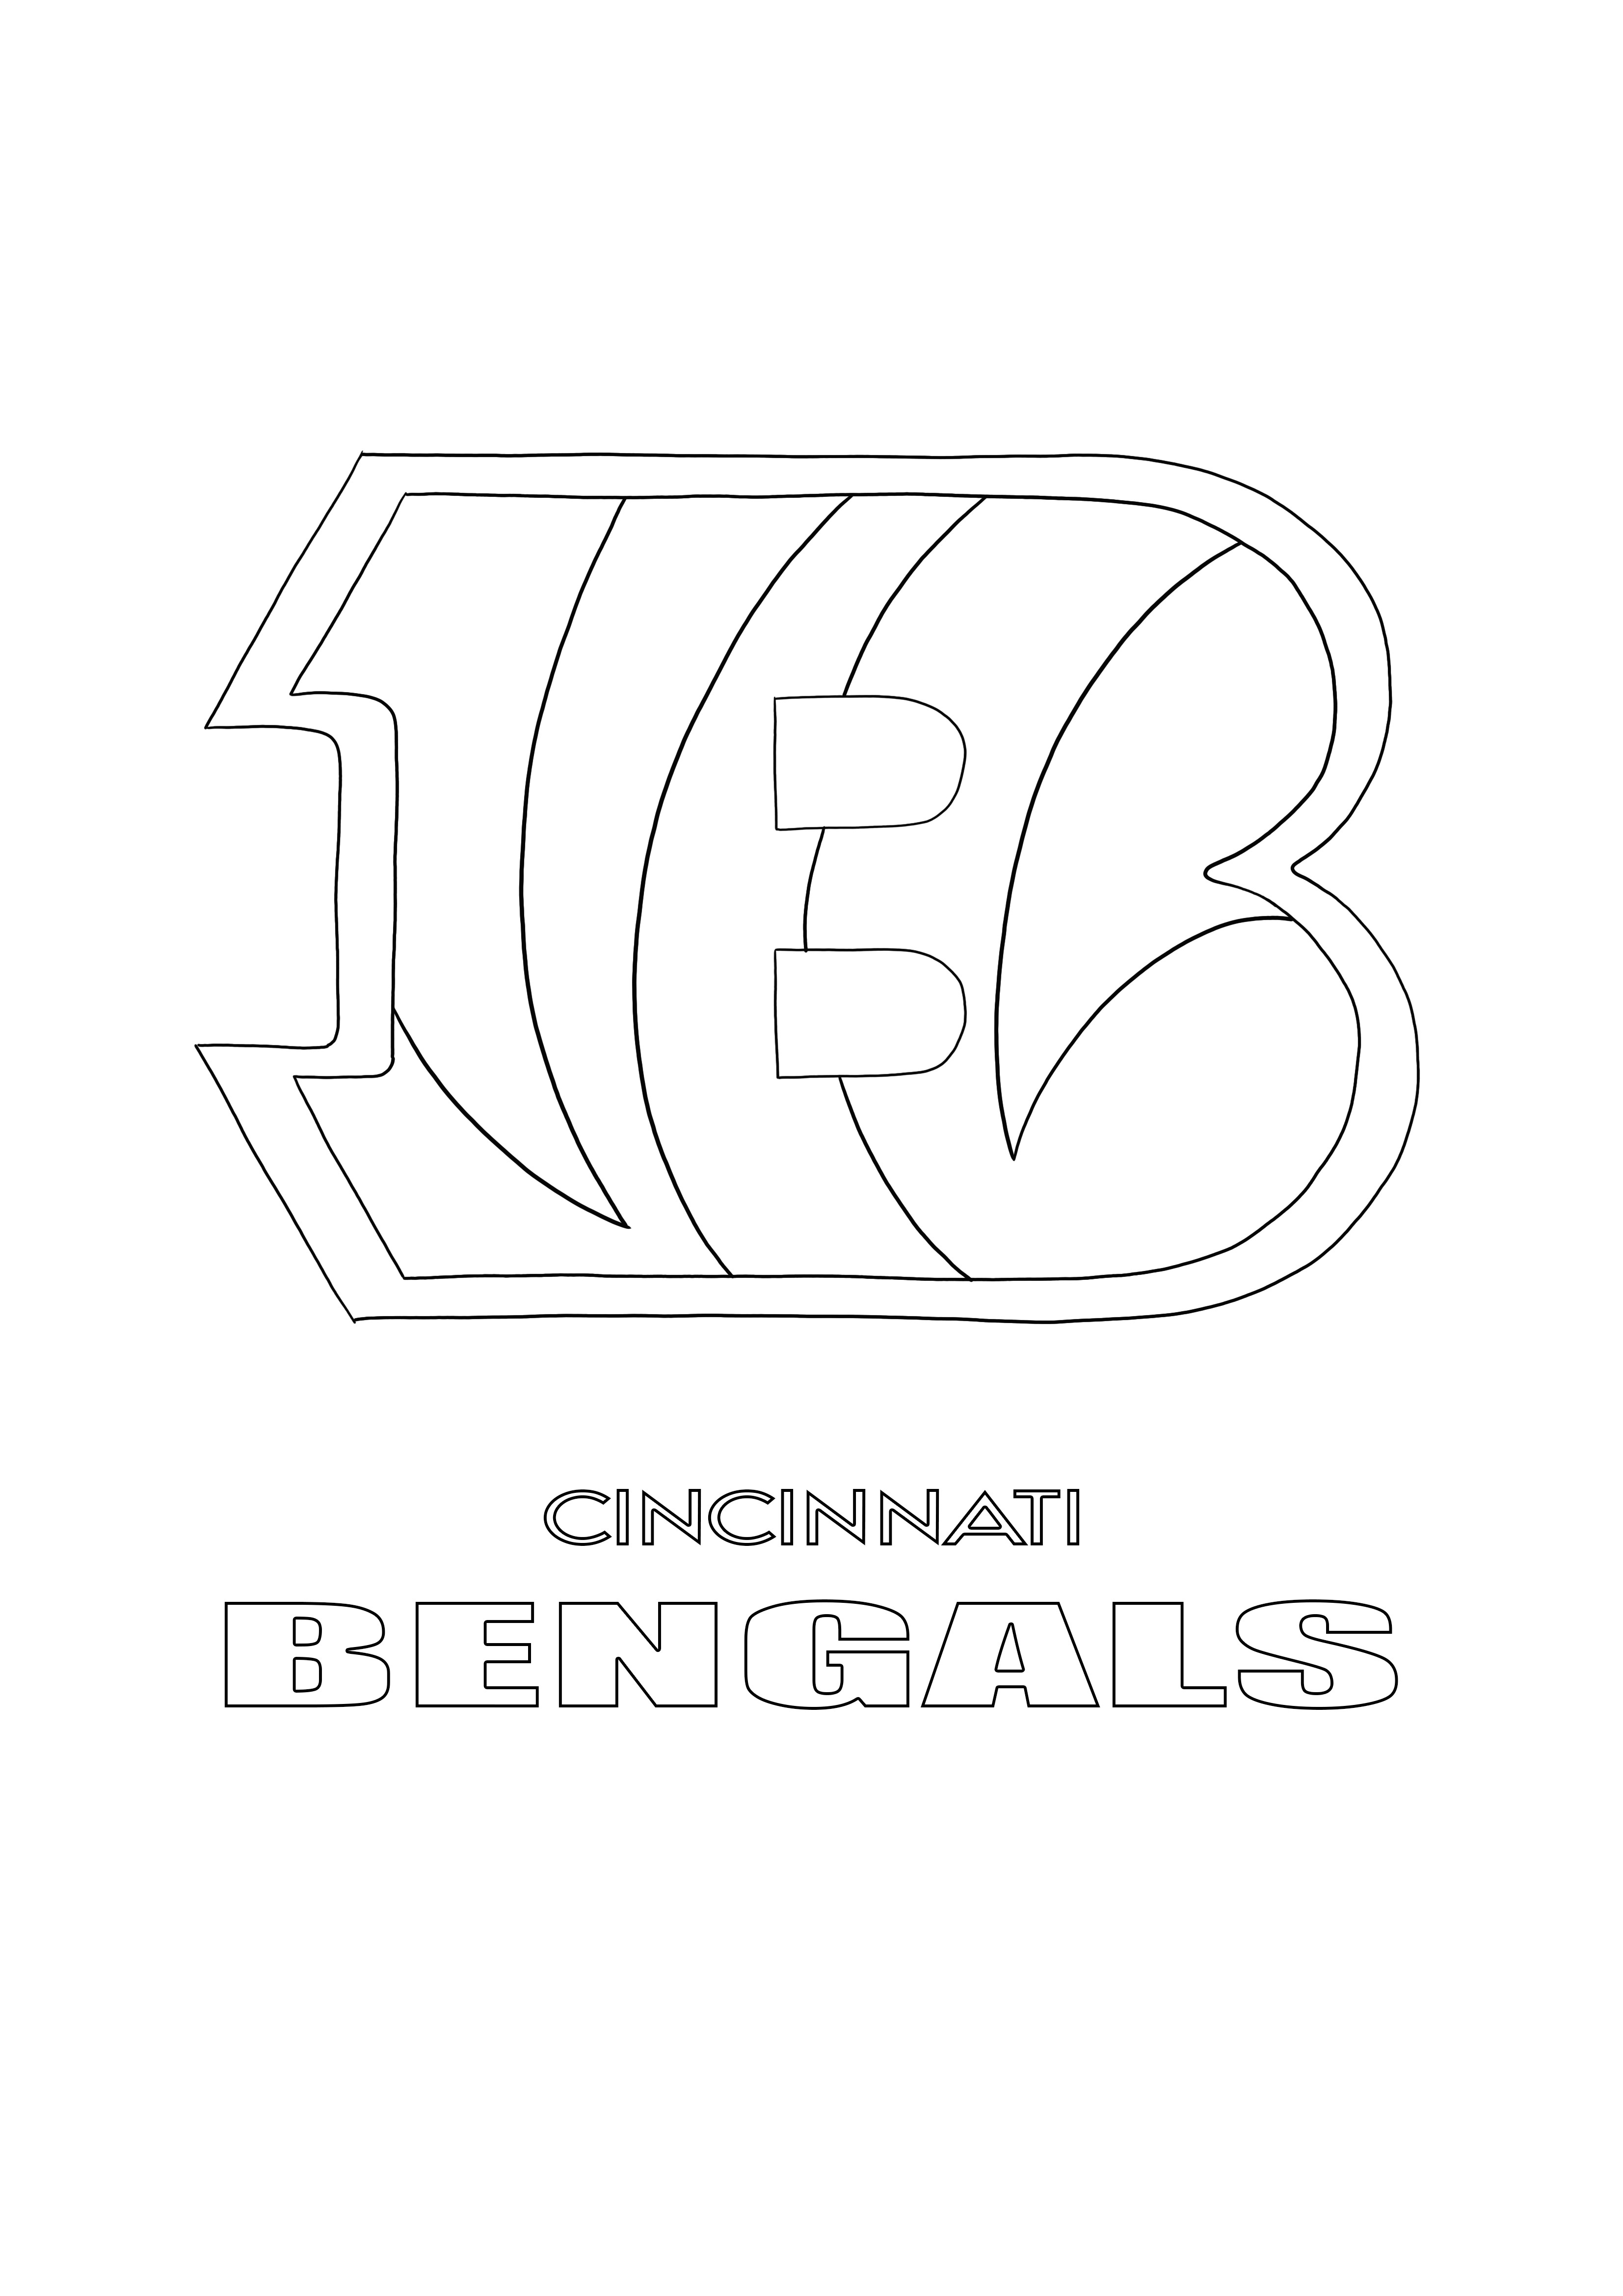 Az NFL Cincinnati Bengals logó ingyenesen nyomtatható, gyerekeknek színezhető